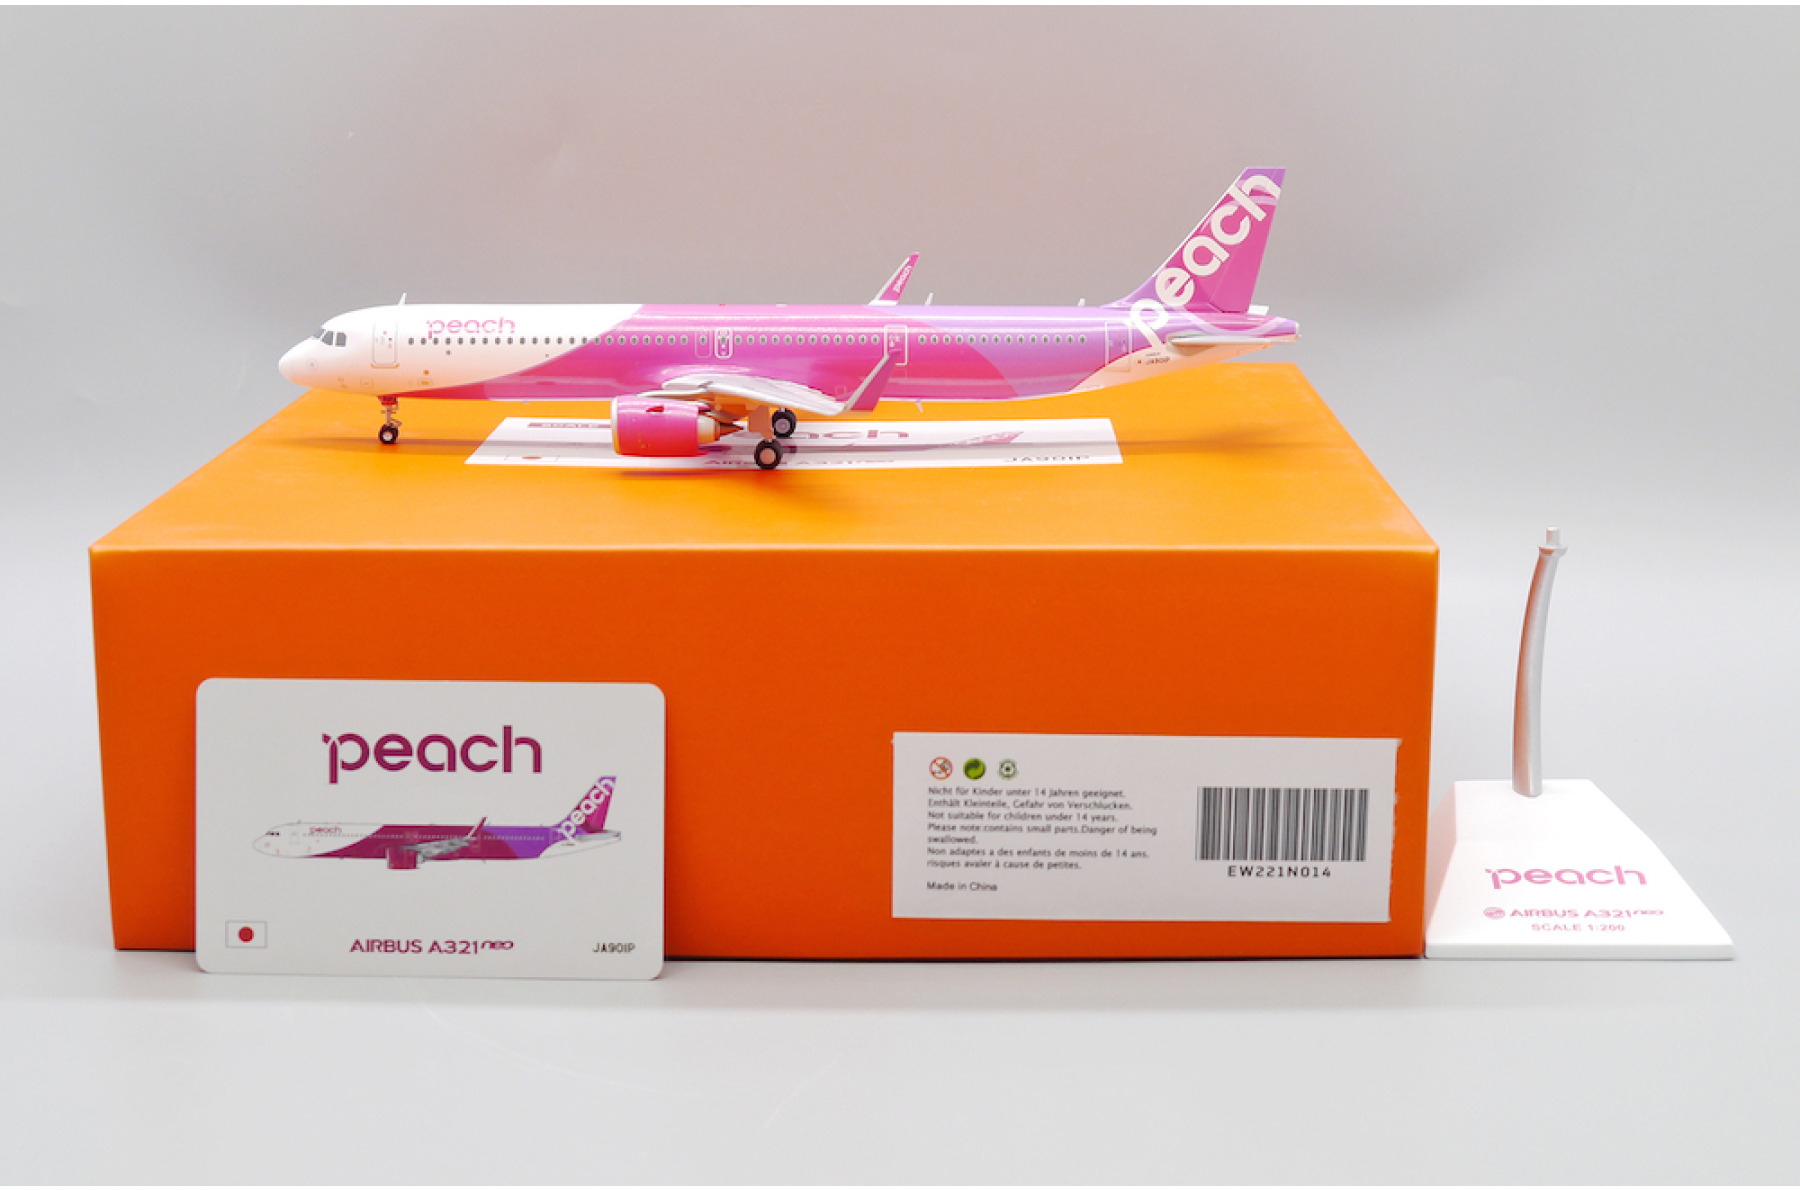 200 peach AIRBUS A321neo JA901P